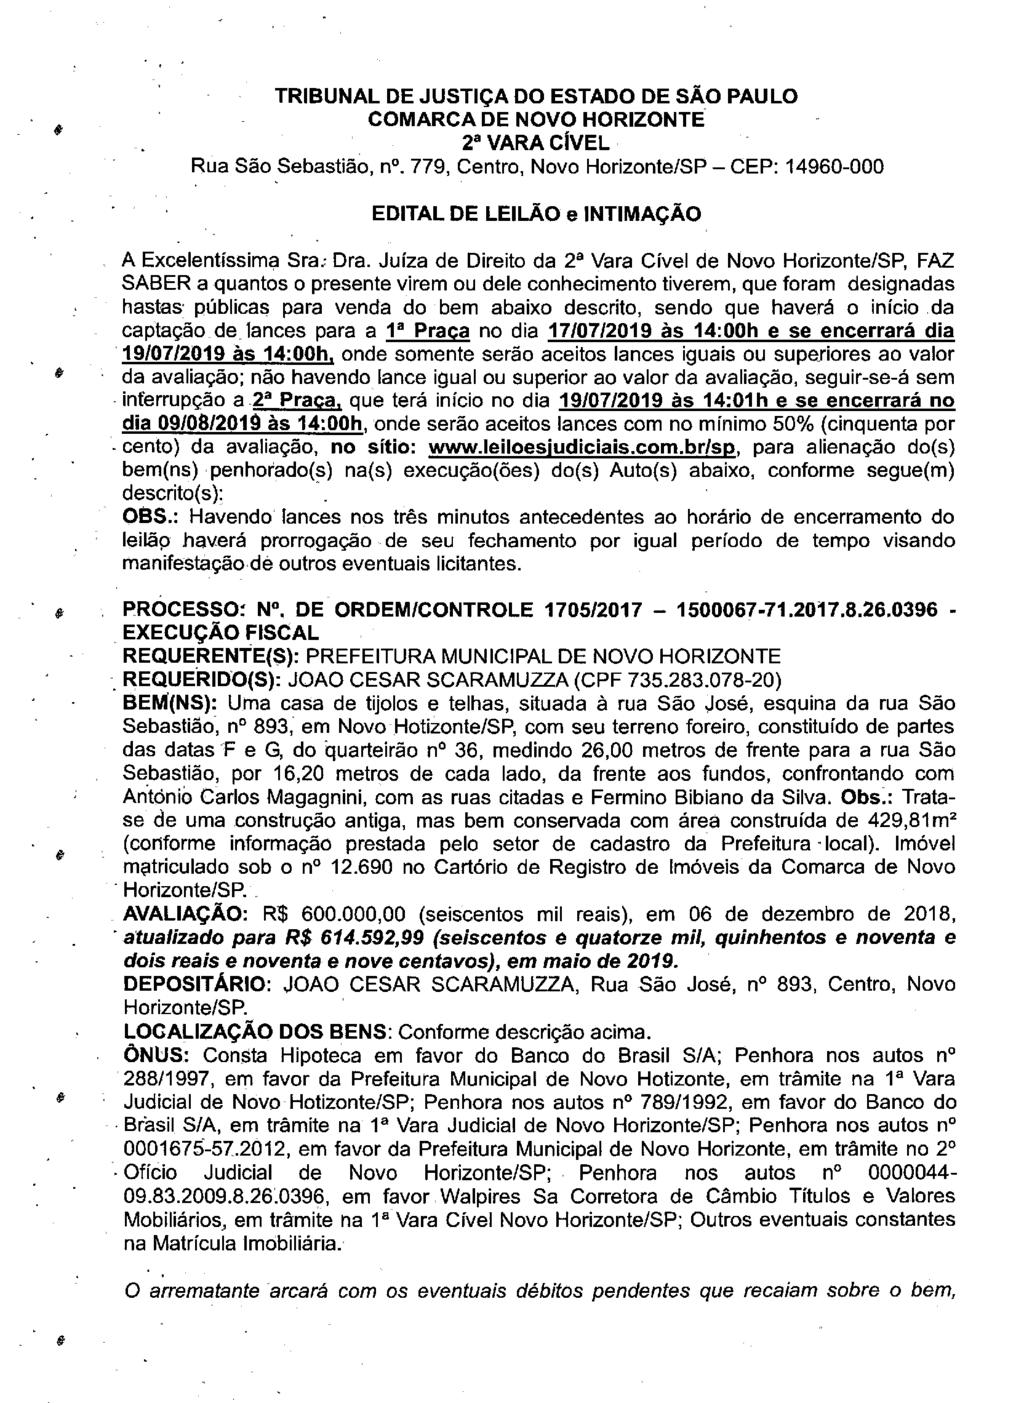 fls. 161 Este documento é cópia do original, assinado digitalmente por VALERIA THEREZINHA DE FREITAS, liberado nos autos em 19/06/2019 às 11:58.